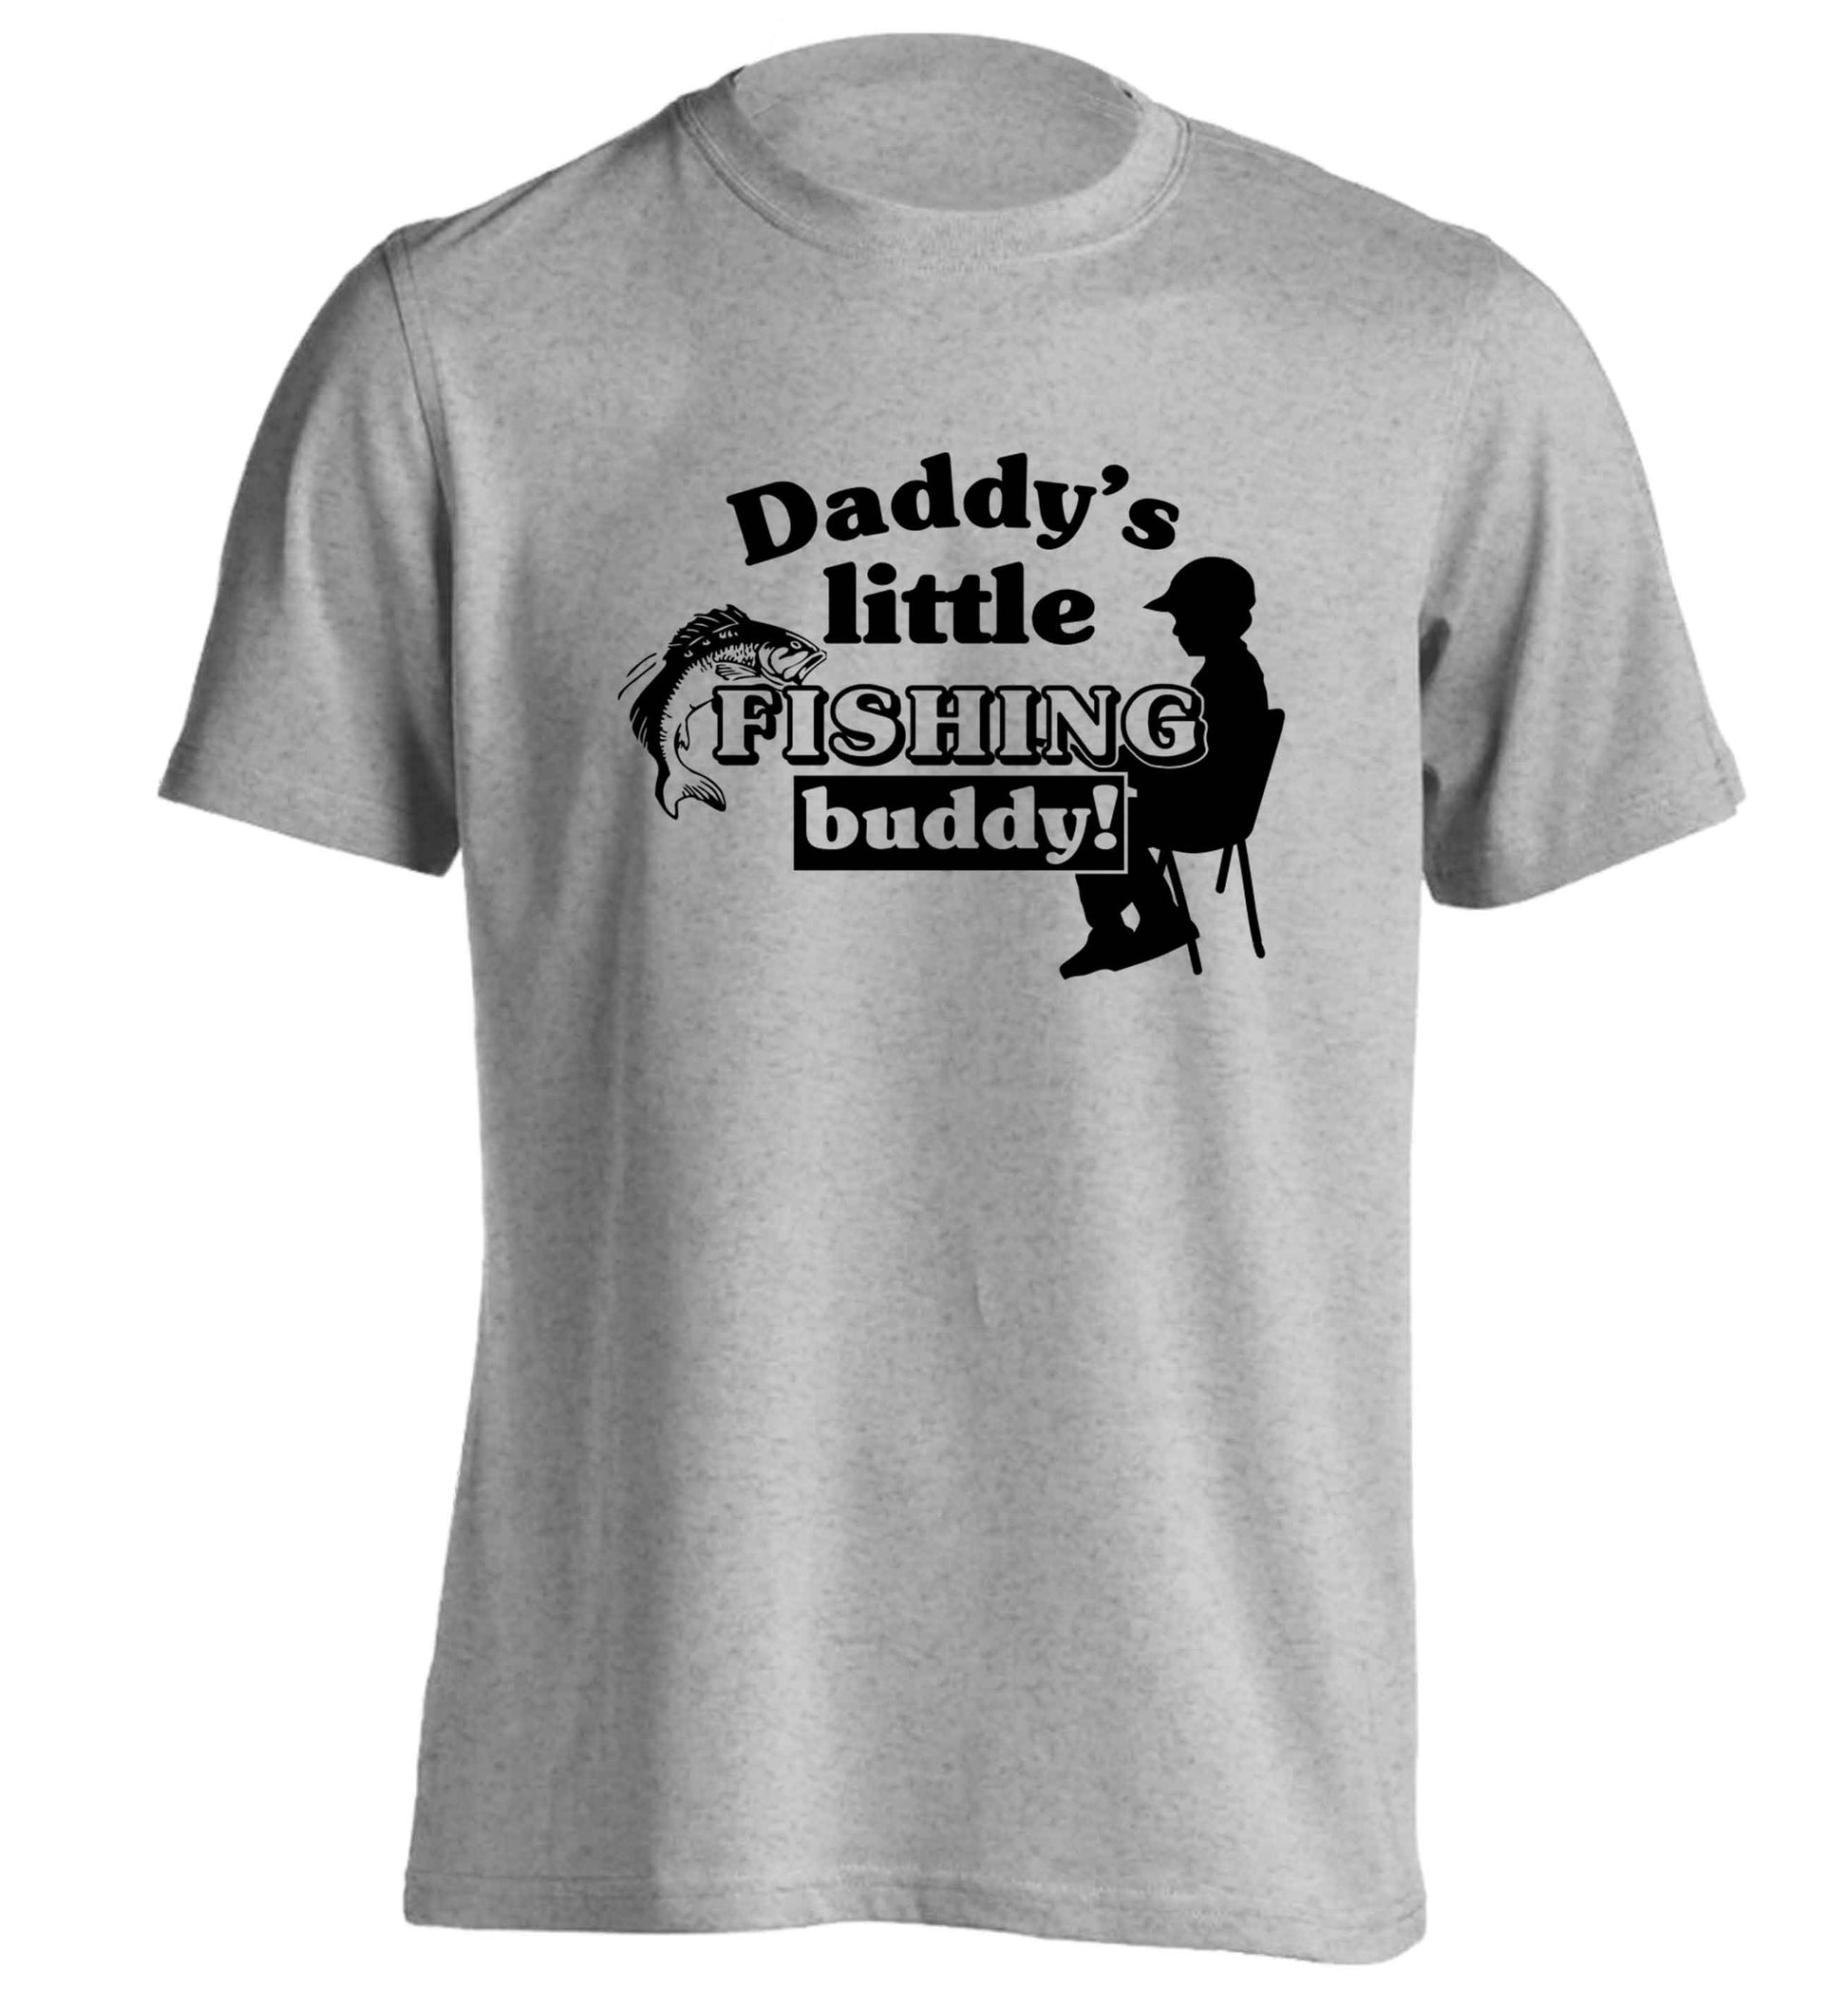 Daddy's little fishing buddy adults unisex grey Tshirt 2XL